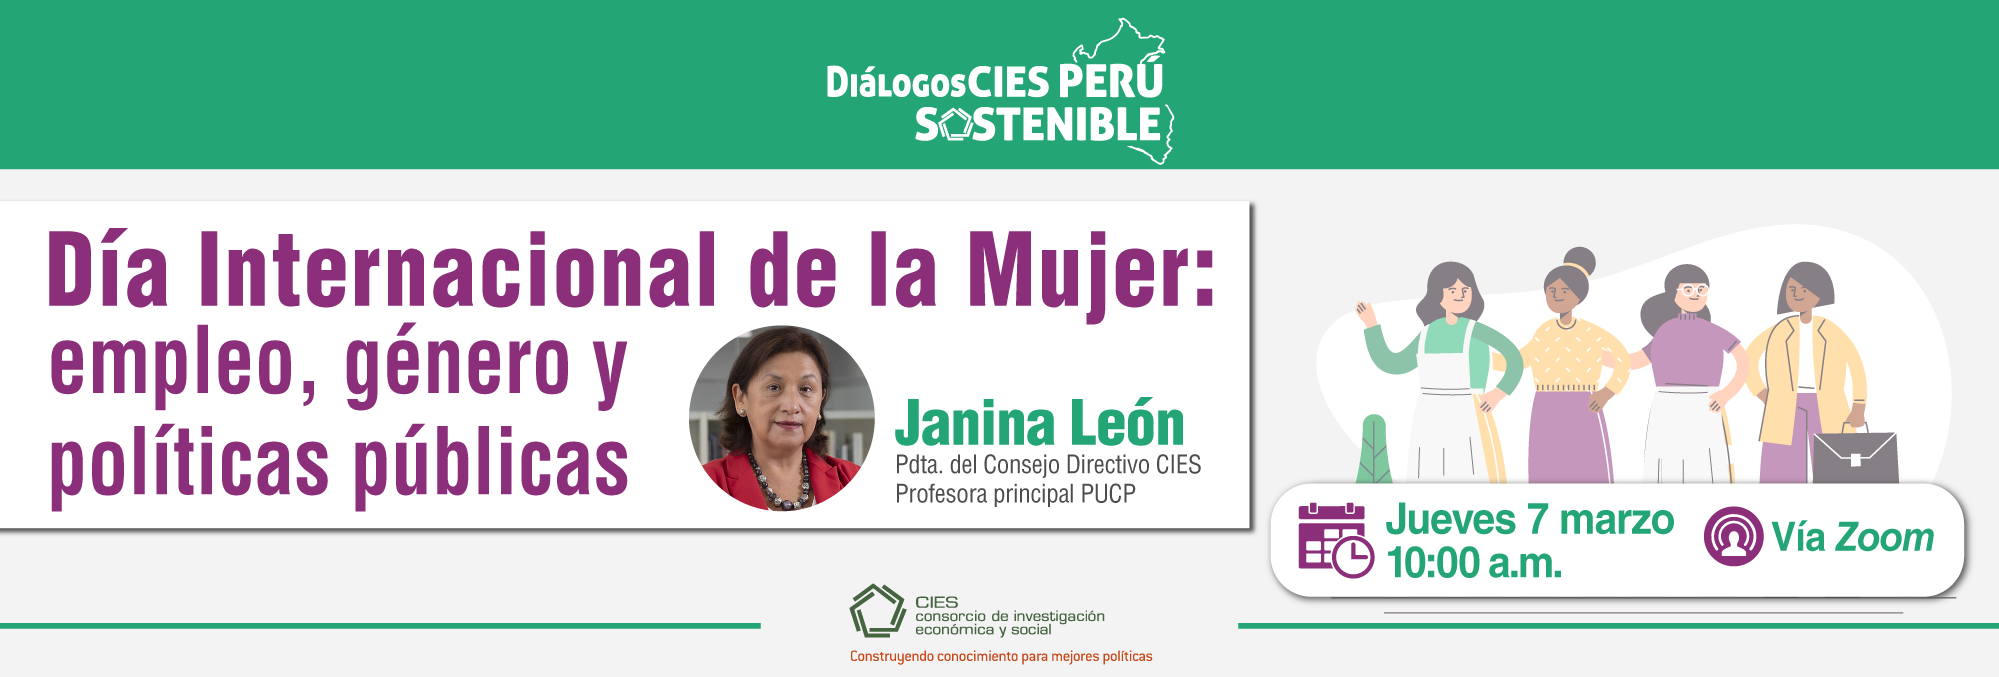 XX Diálogo CIES Perú Sostenible “Día Internacional de la Mujer: empleo, género y políticas públicas”